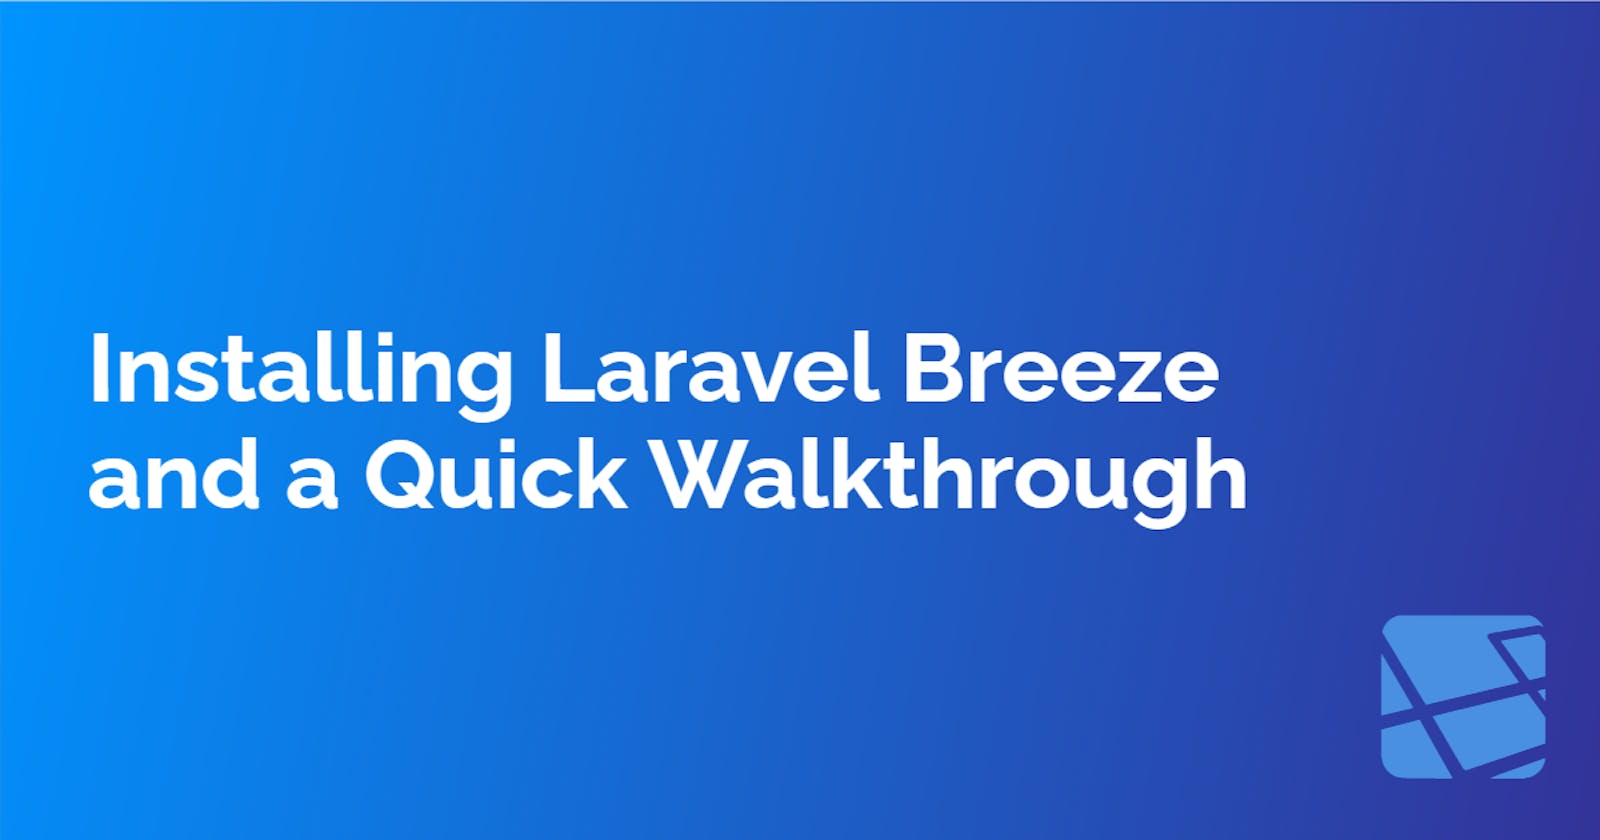 Installing Laravel Breeze and a Quick Walkthrough